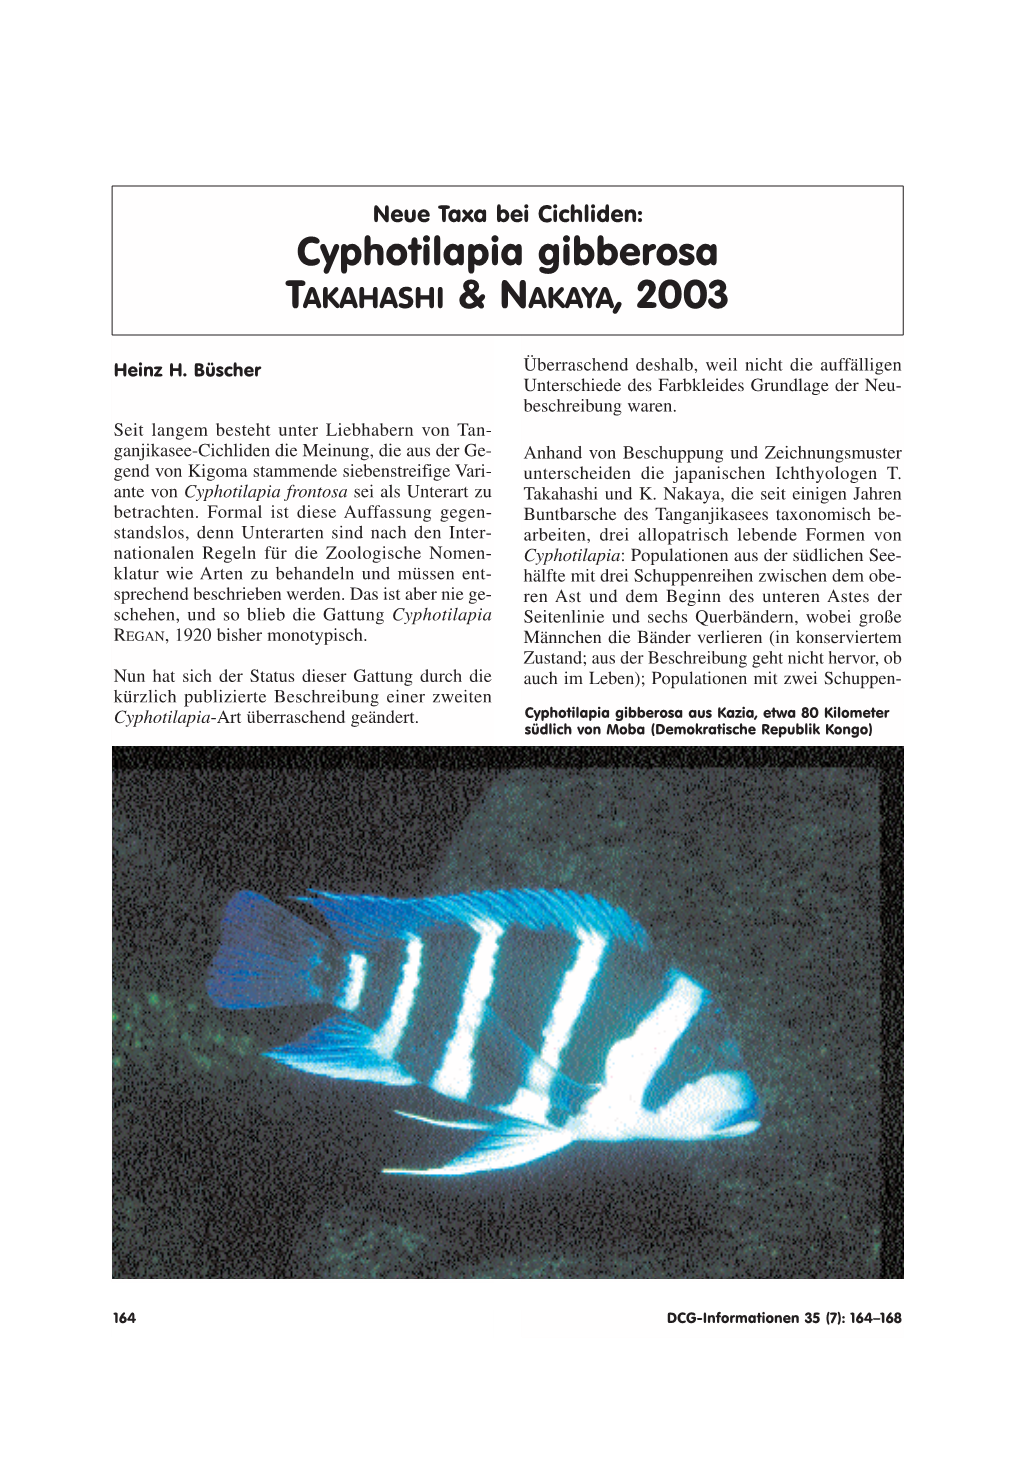 Cyphotilapia Gibberosa TAKAHASHI & NAKAYA, 2003